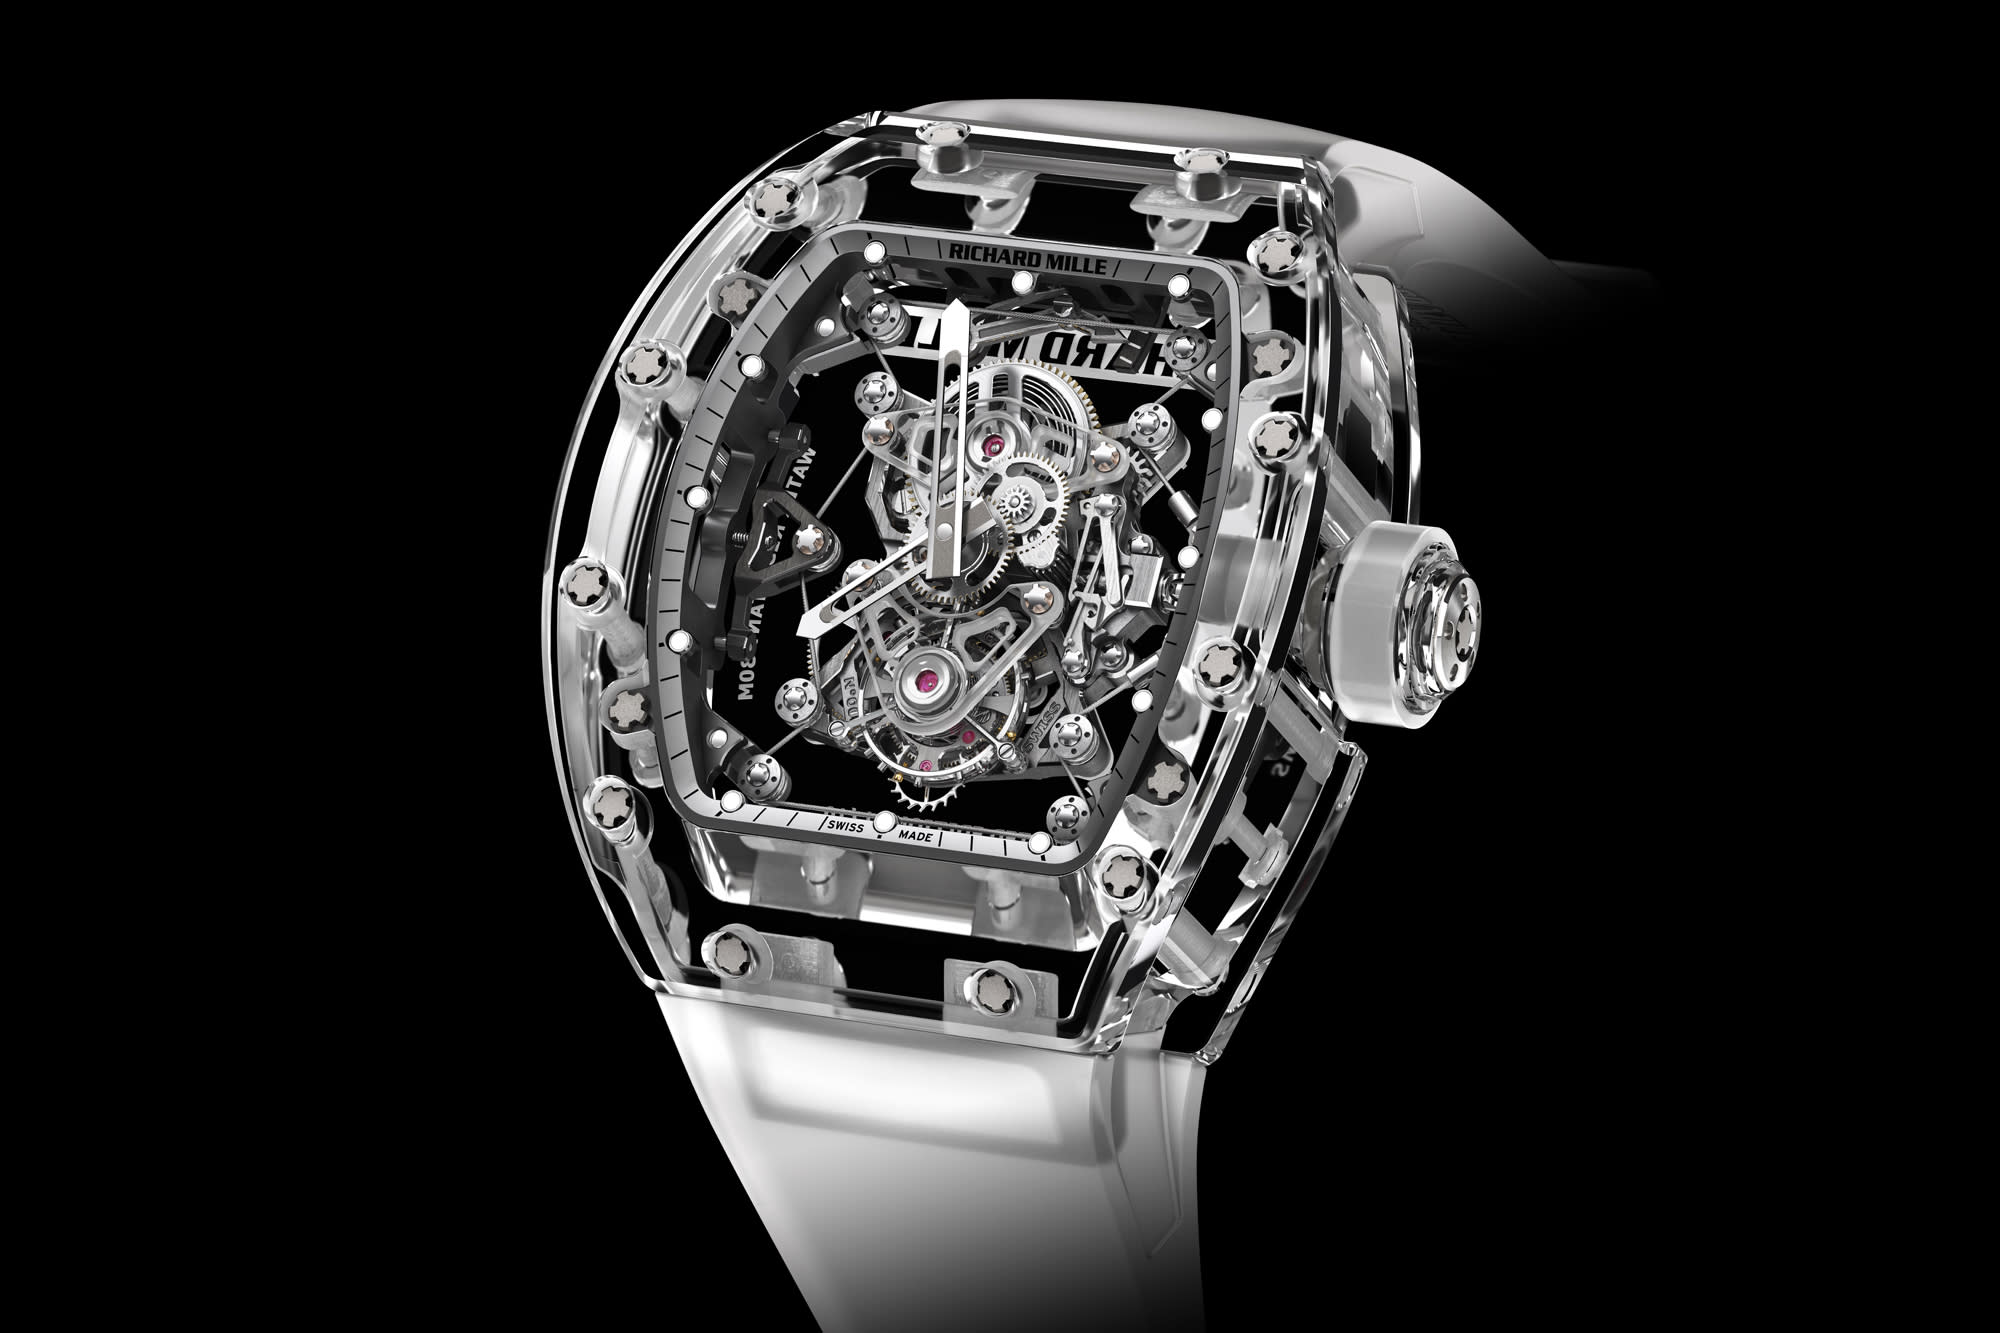 Richard Mille's $2 million watch 